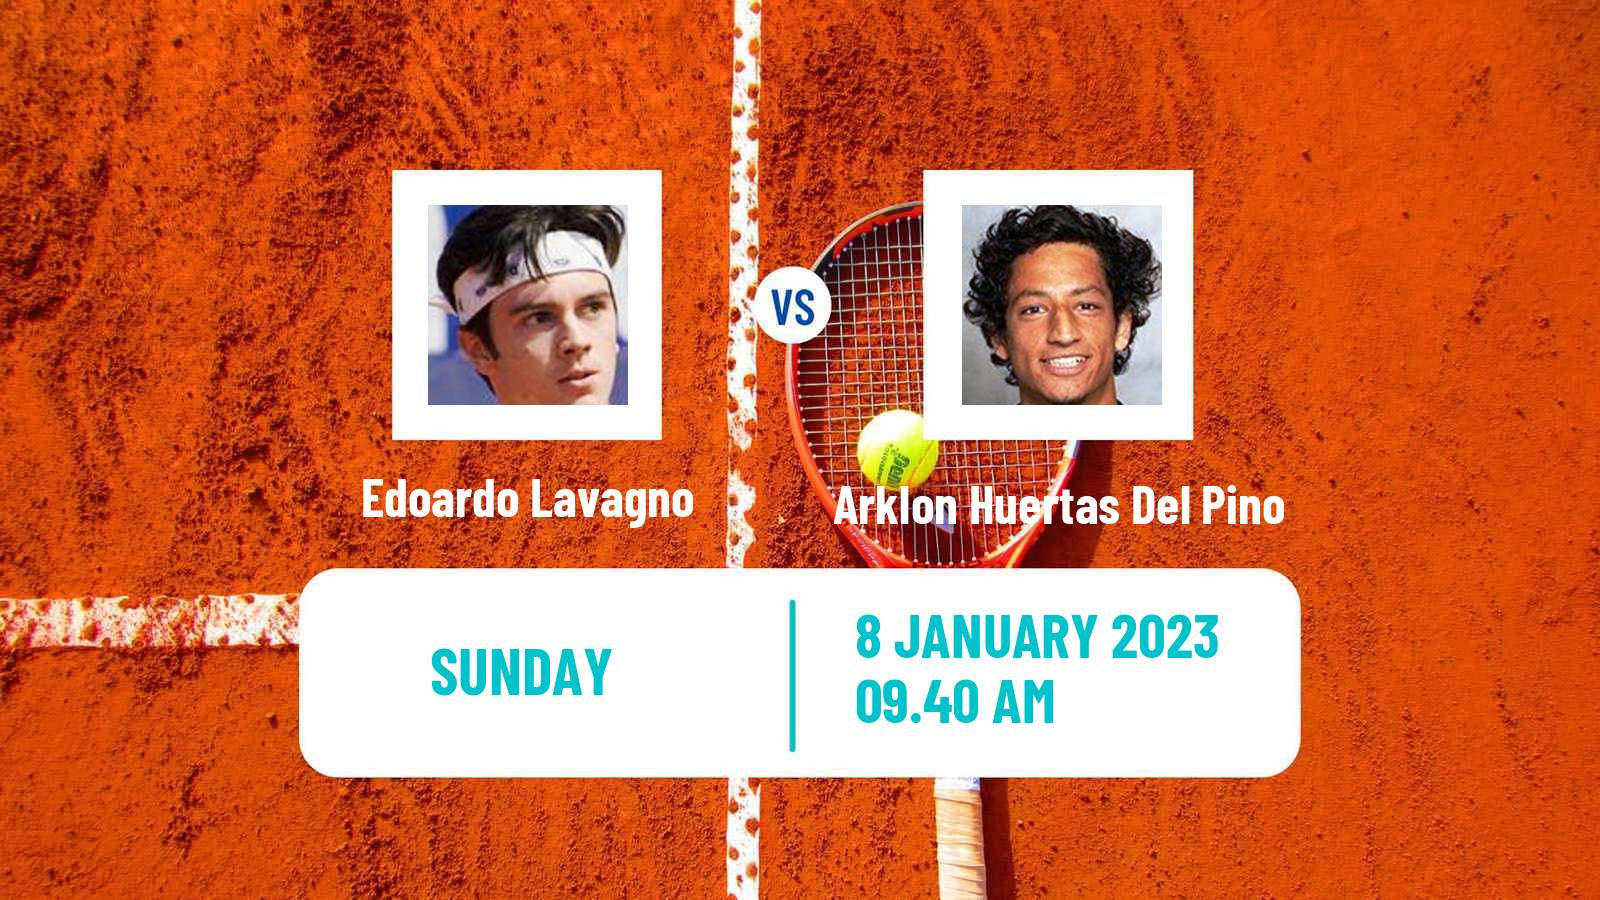 Tennis ATP Challenger Edoardo Lavagno - Arklon Huertas Del Pino